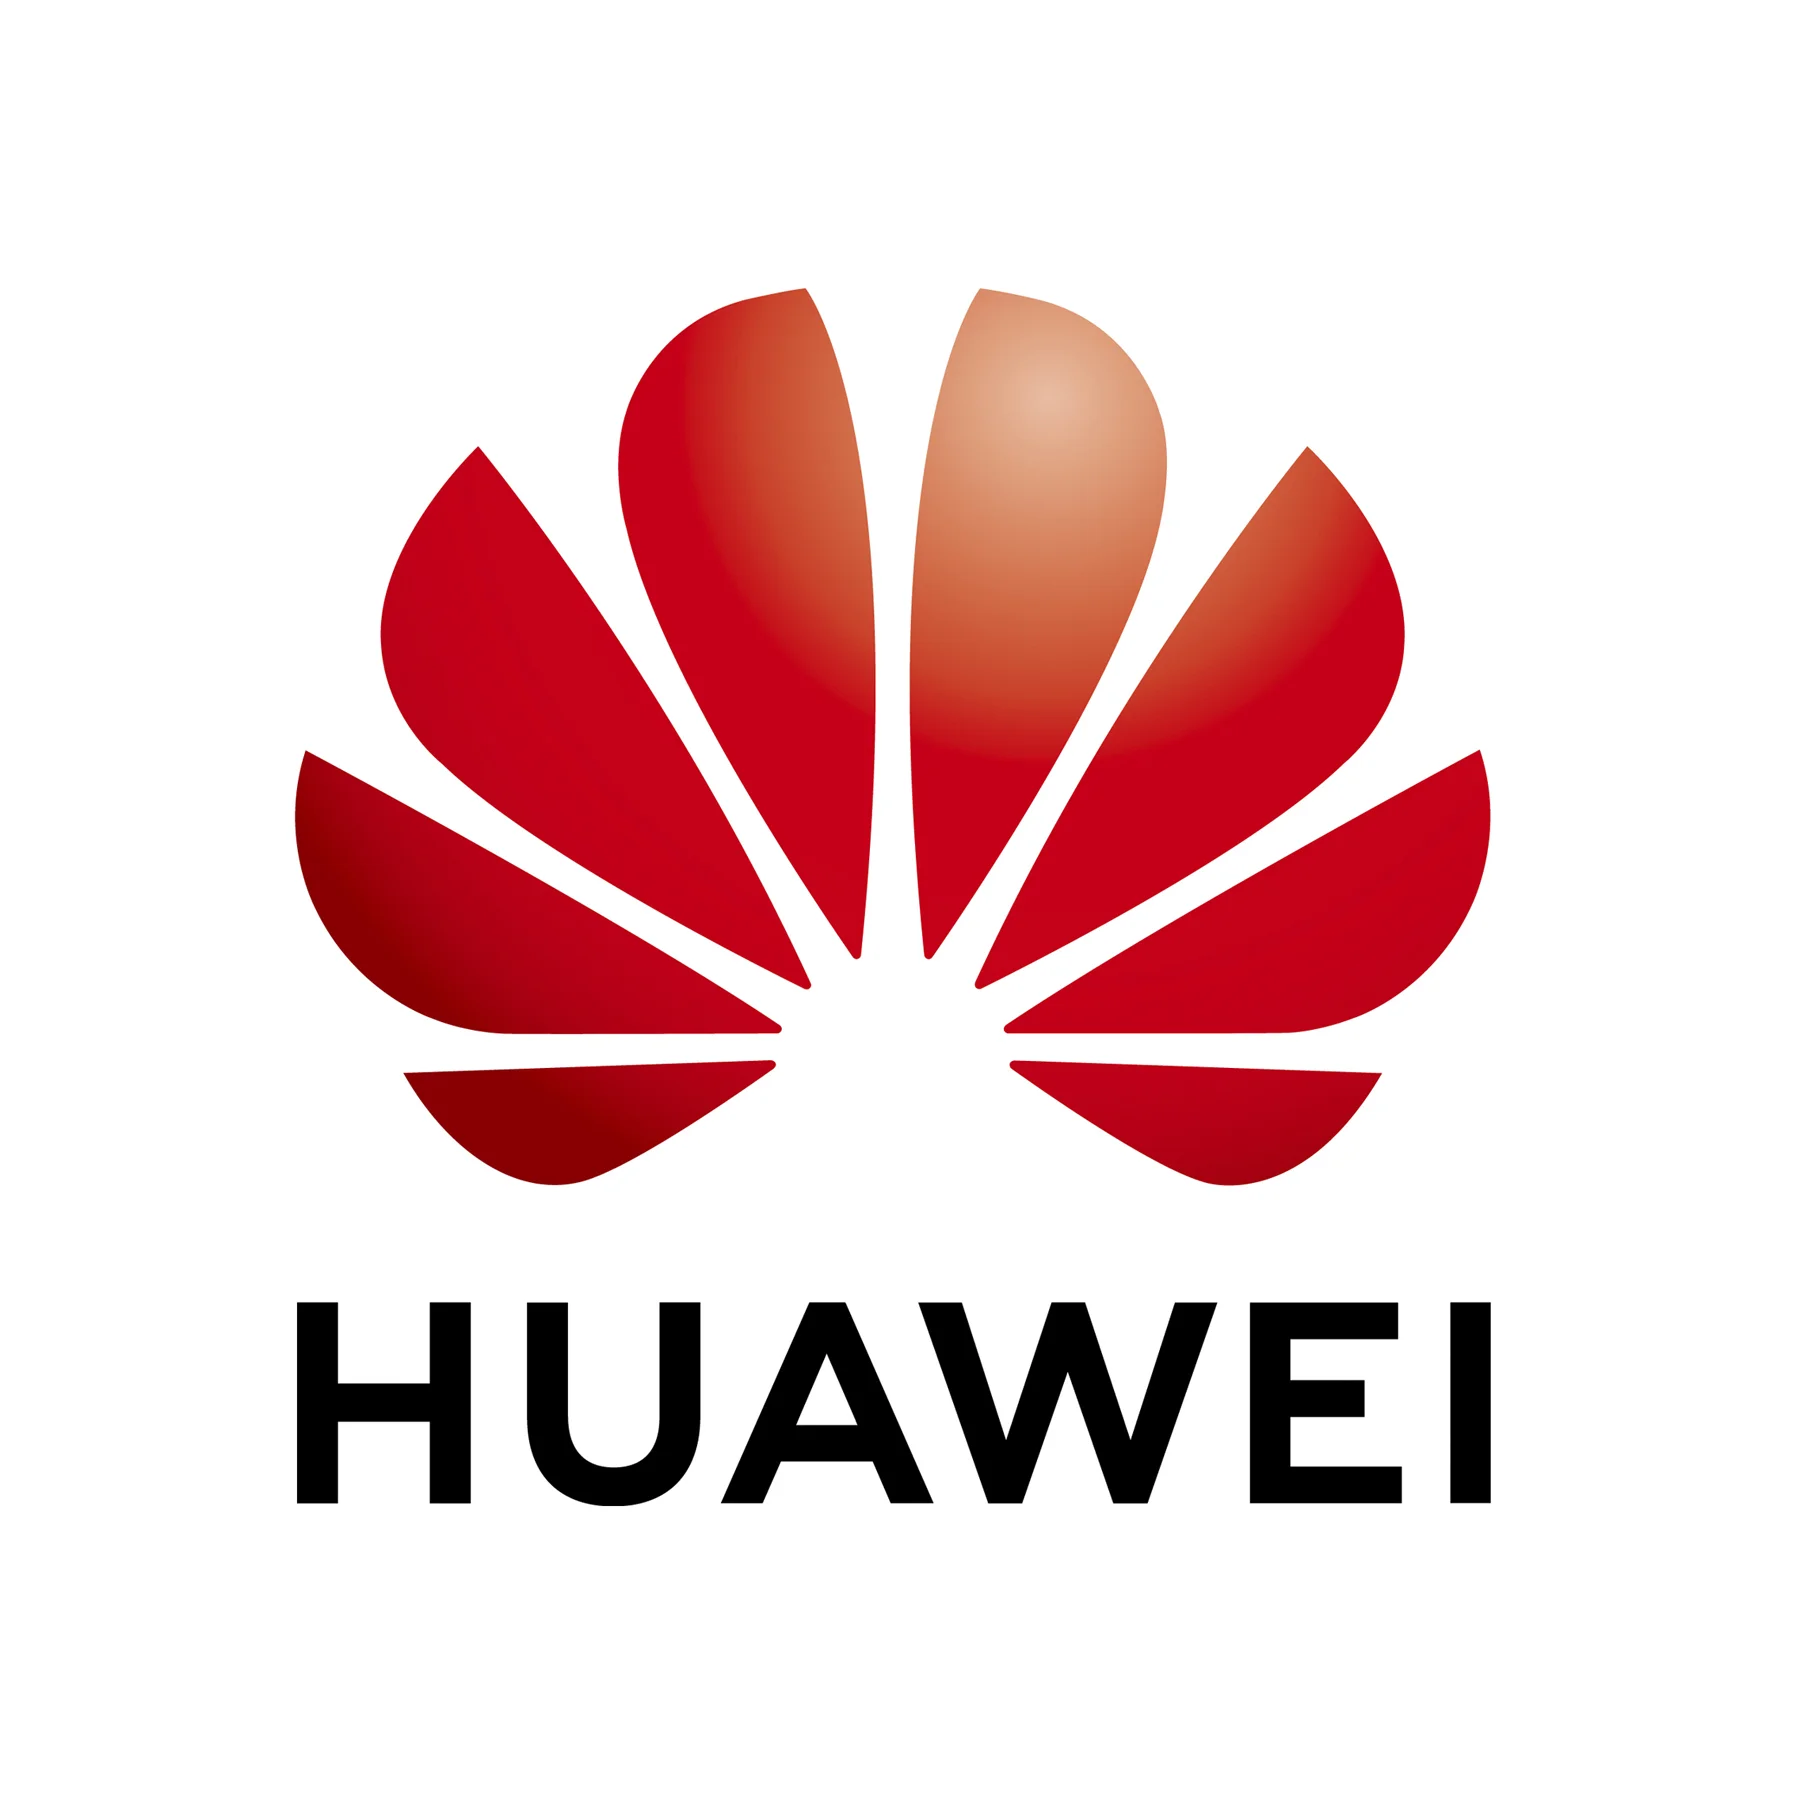 Huawei FusionCube визнано одним із 5 найкращих постачальників корпоративної гіперконвергентної інфраструктури (HCI) за версією DCIG